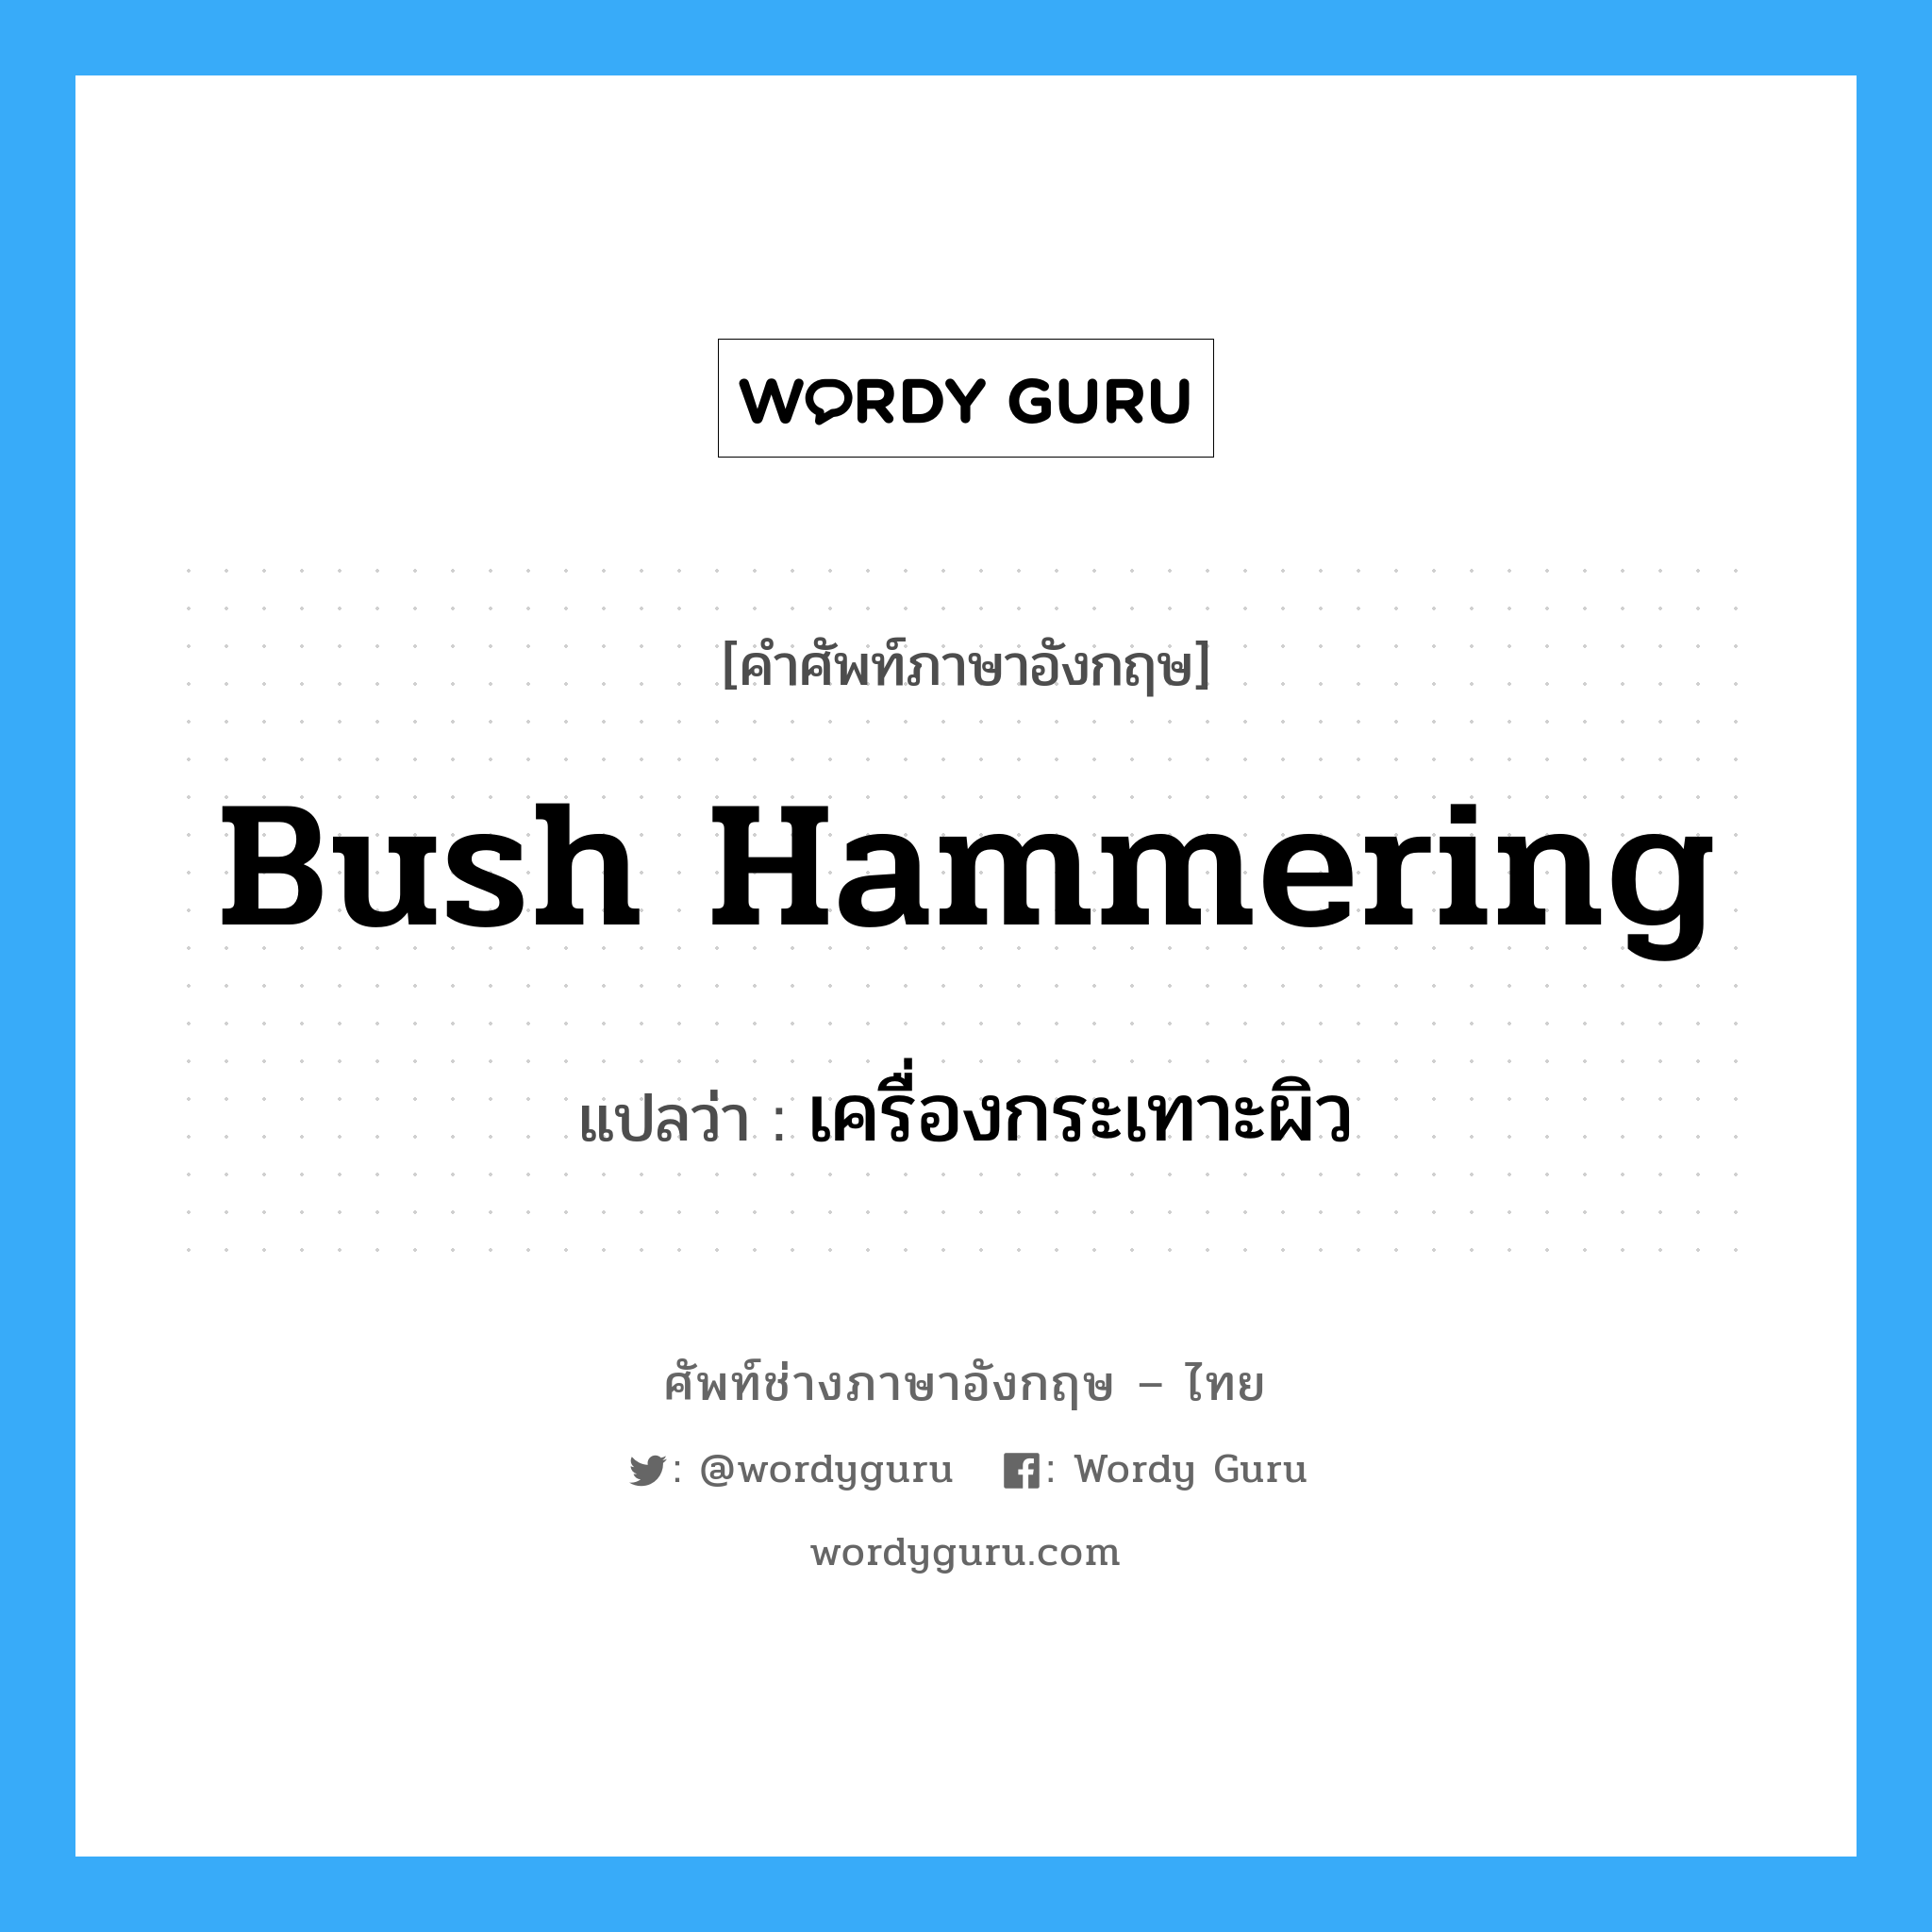 เครื่องกระเทาะผิว ภาษาอังกฤษ?, คำศัพท์ช่างภาษาอังกฤษ - ไทย เครื่องกระเทาะผิว คำศัพท์ภาษาอังกฤษ เครื่องกระเทาะผิว แปลว่า bush hammering